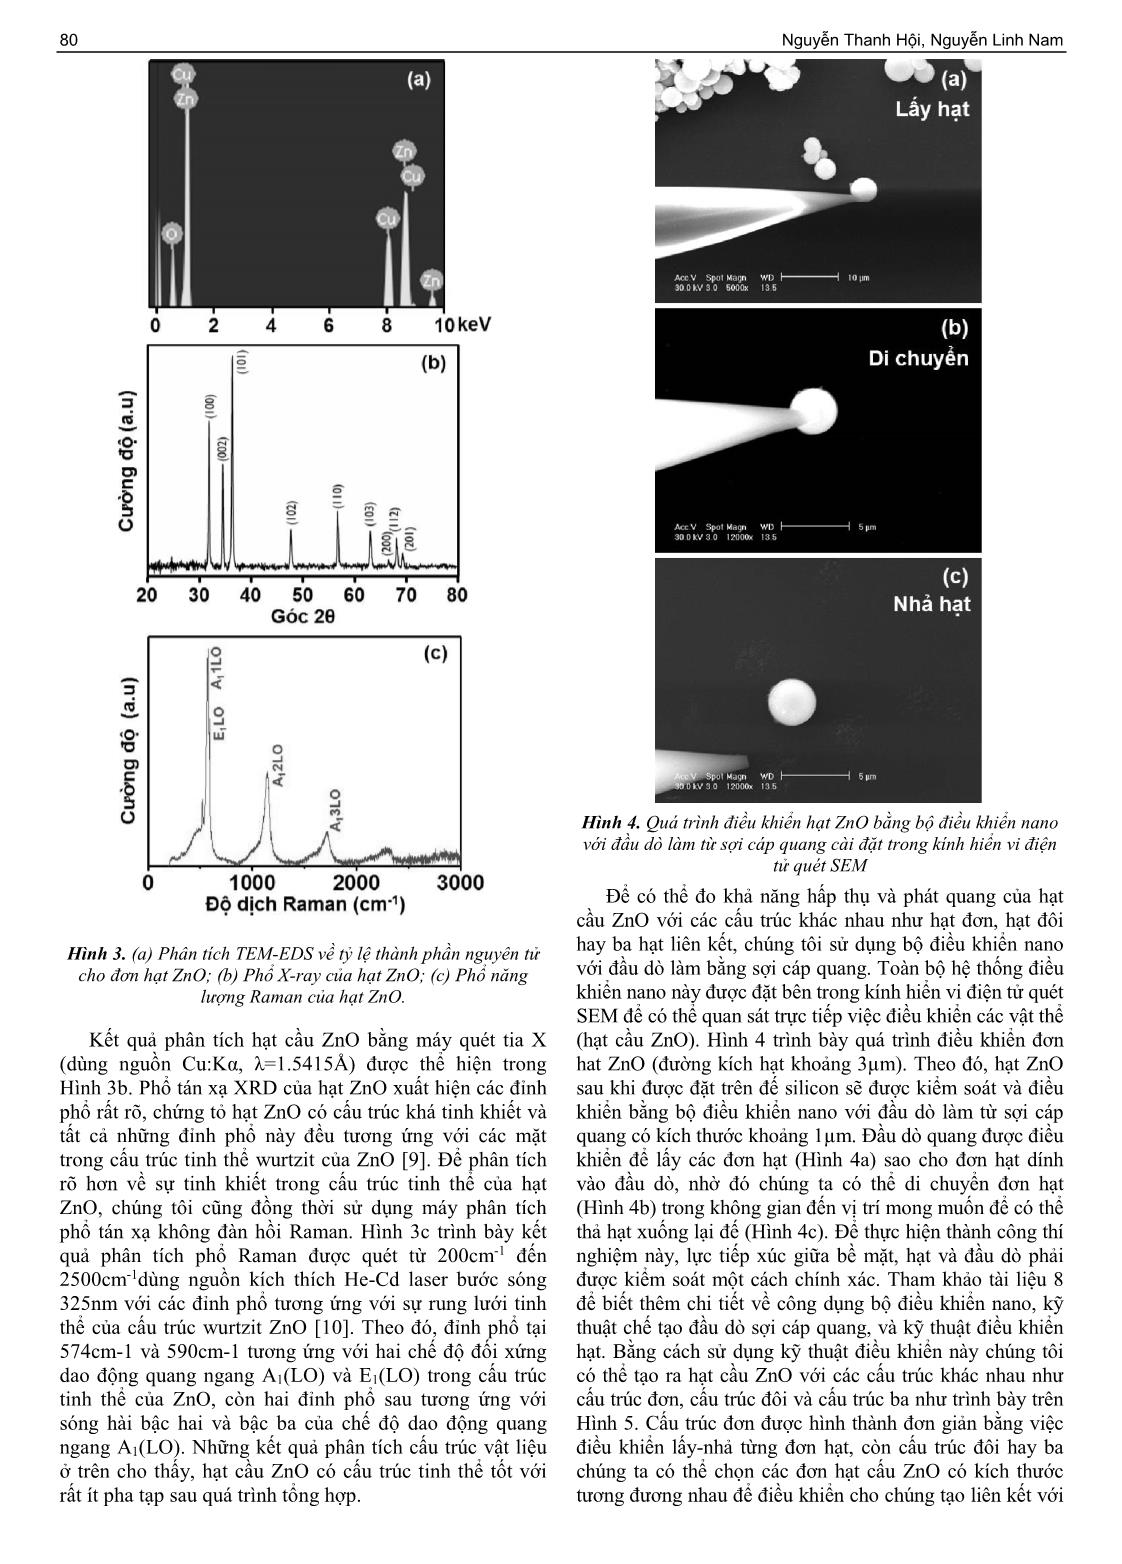 Tổng hợp và phân tích đặc tính quang của các vi hạt cầu ZnO trang 3